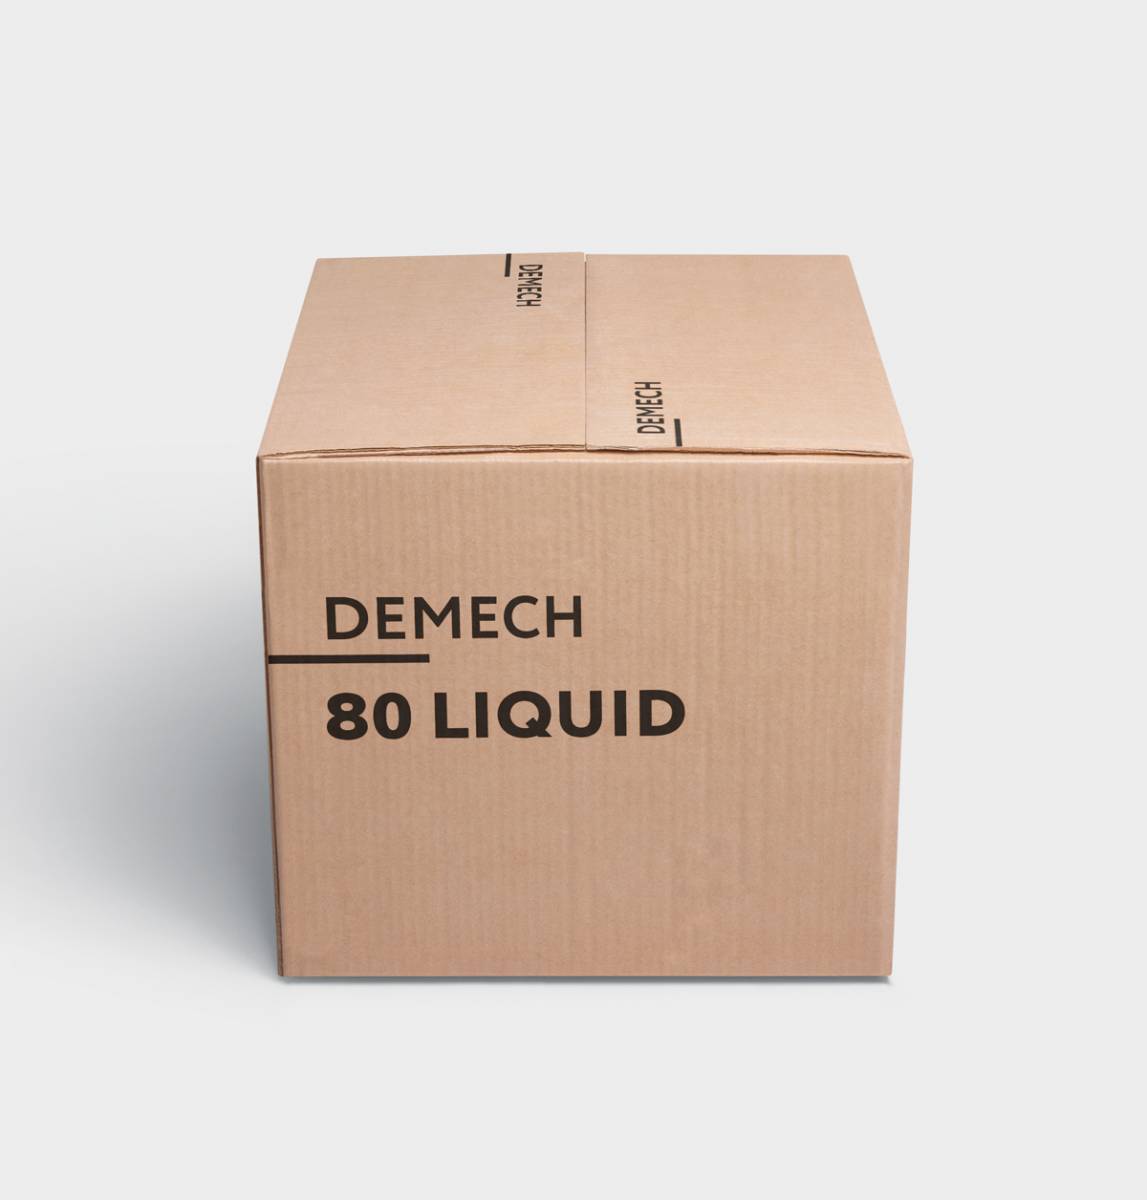 DEMECH 80 LIQUID, универсальный жидкий уретановый компаунд